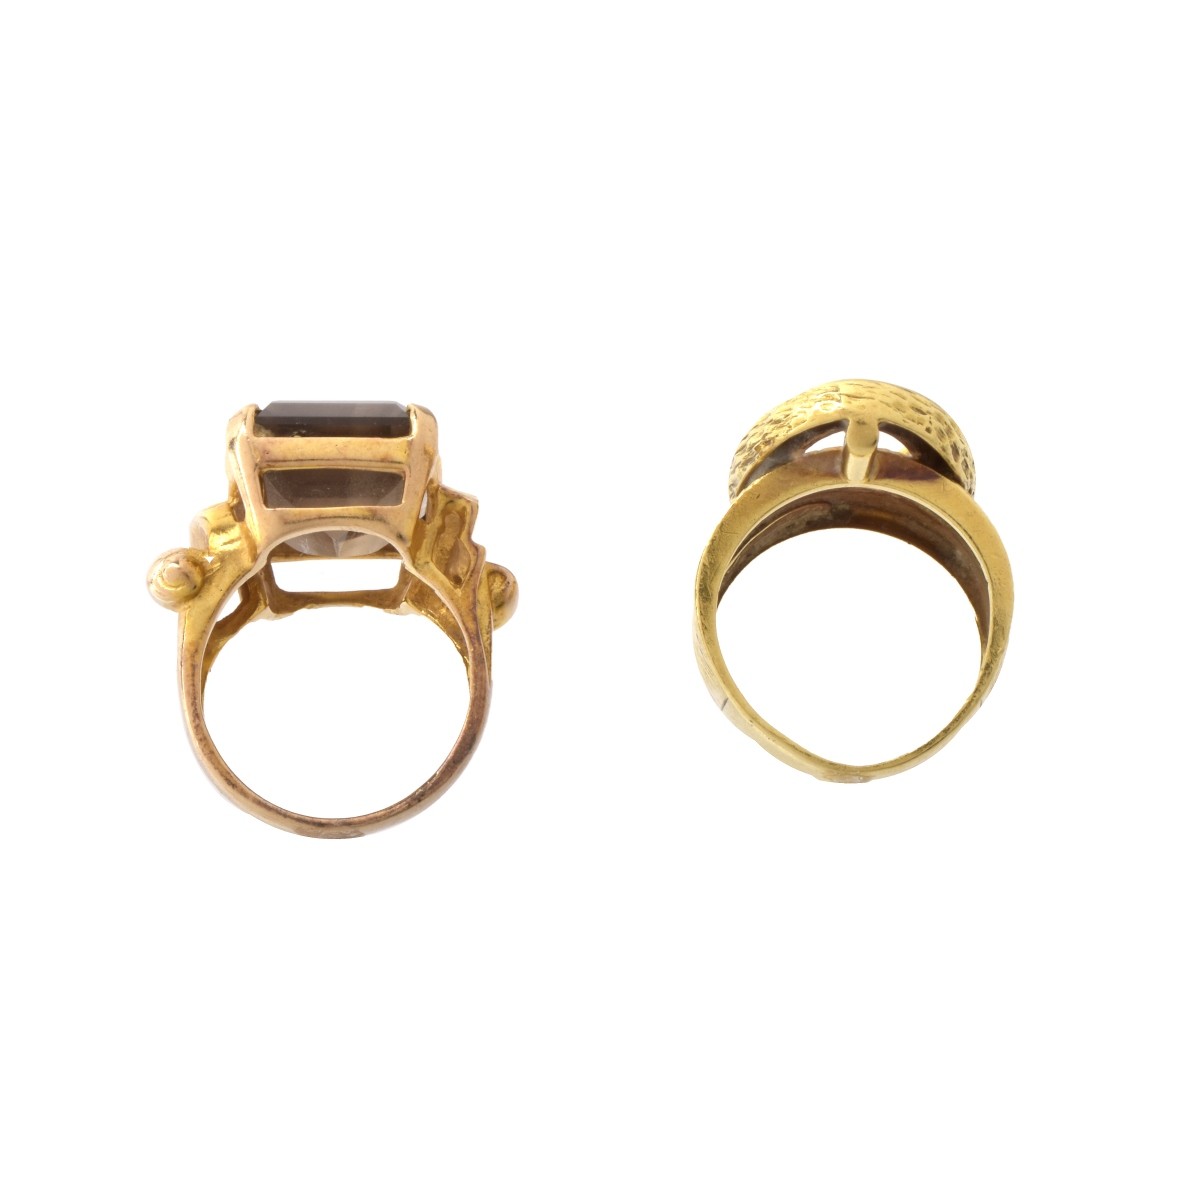 Two Vintage Rings